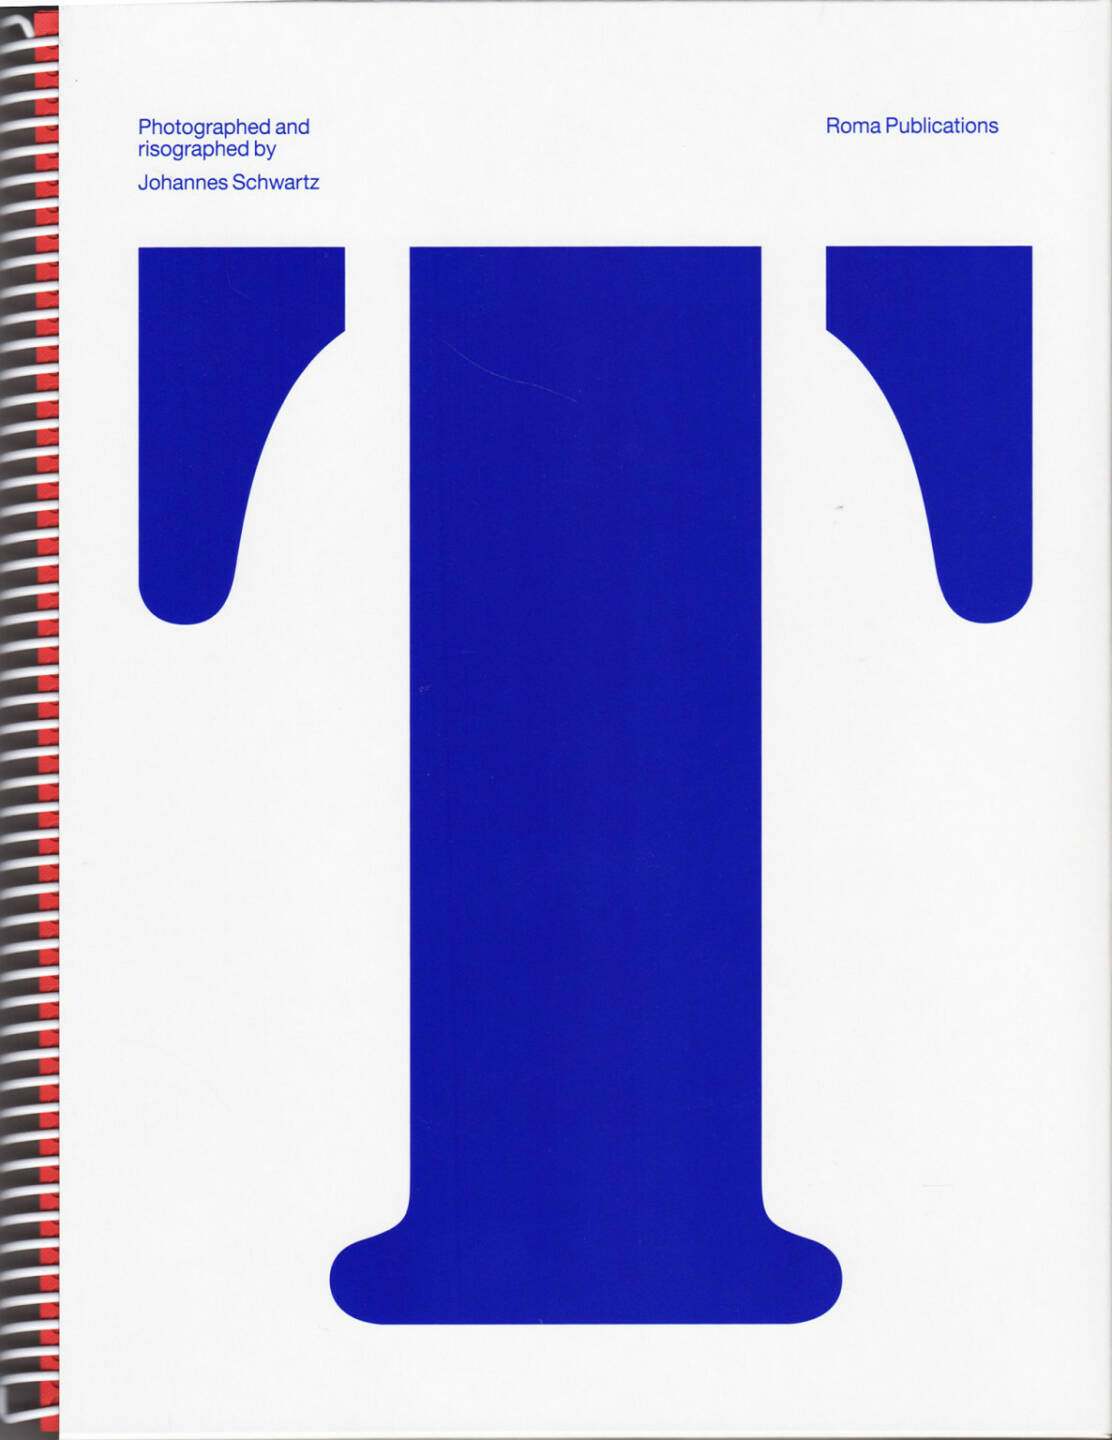 Johannes Schwartz - Tiergarten, Roma Publications 2014, Cover - http://josefchladek.com/book/johannes_schwartz_-_tiergarten